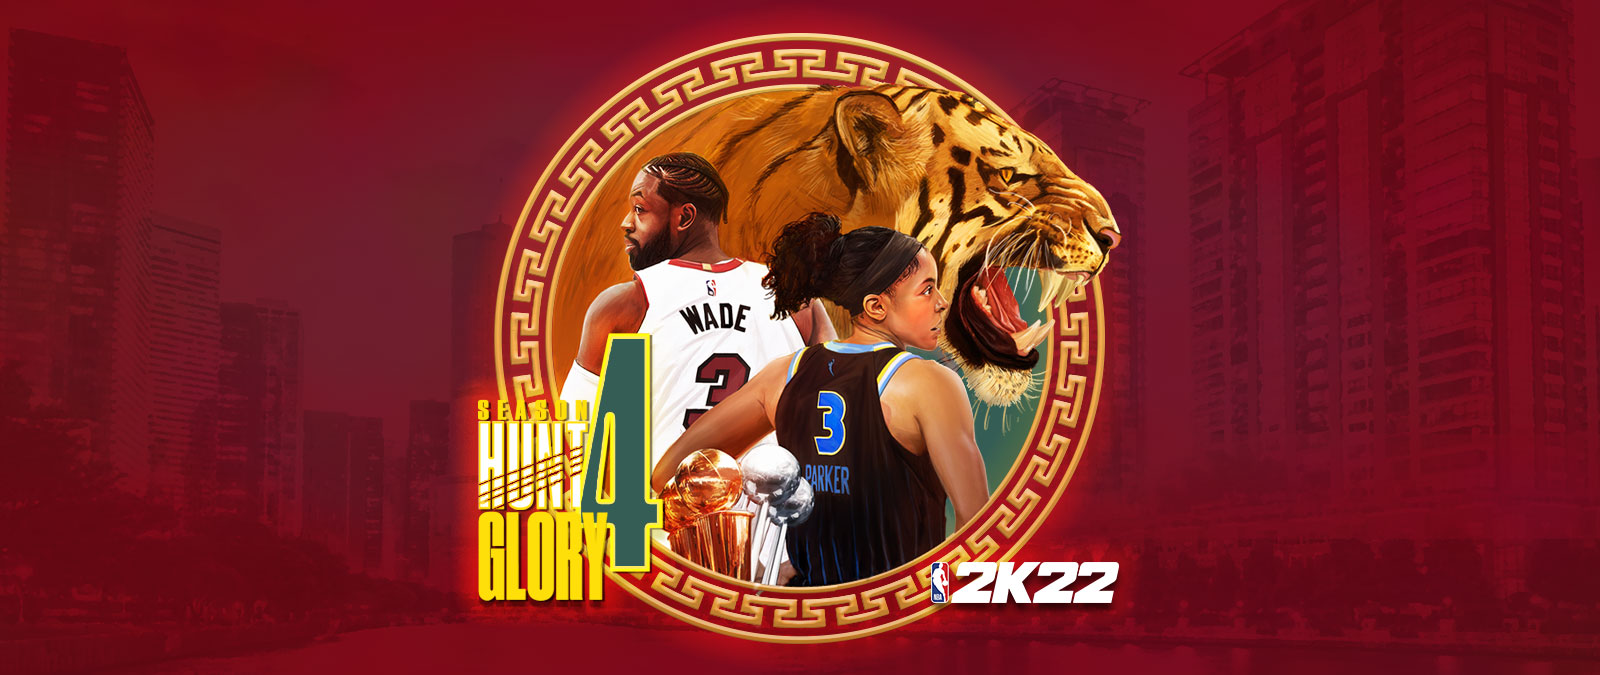 NBA 2K22, Season 4: Hunt 4 Glory, et cirkulært element lagt ud over et rødligt bybillede, der afbilder en knurrende tiger samt Dwayne Wade og Candace Parker med ryggen vendt. 